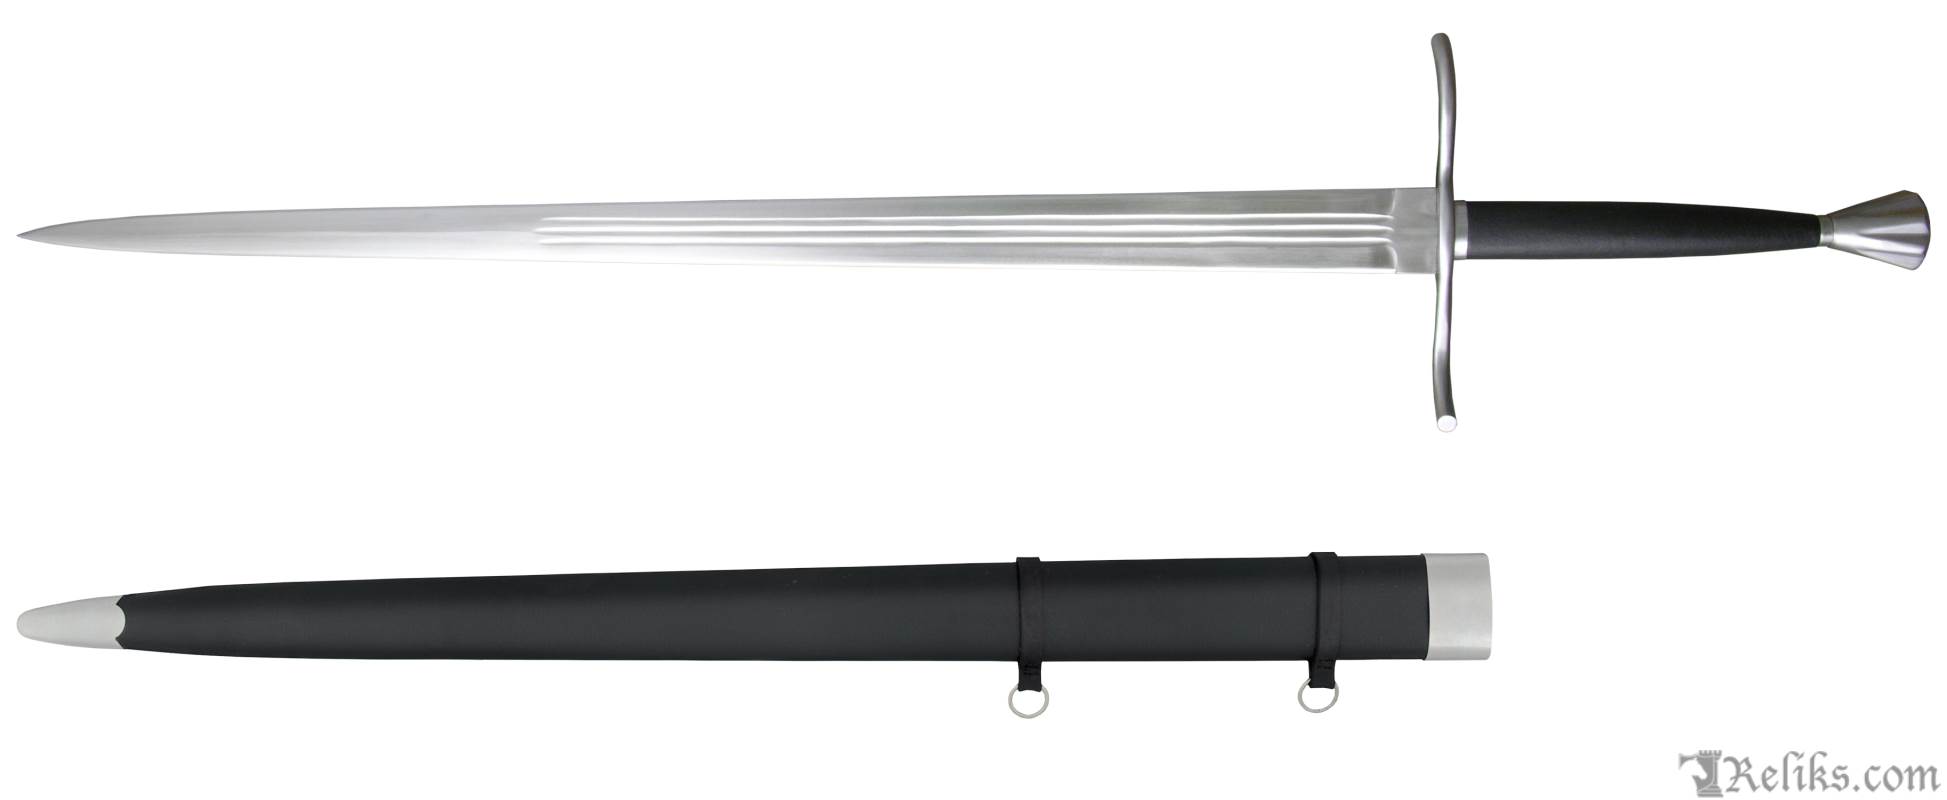 paul chen mercenary sword